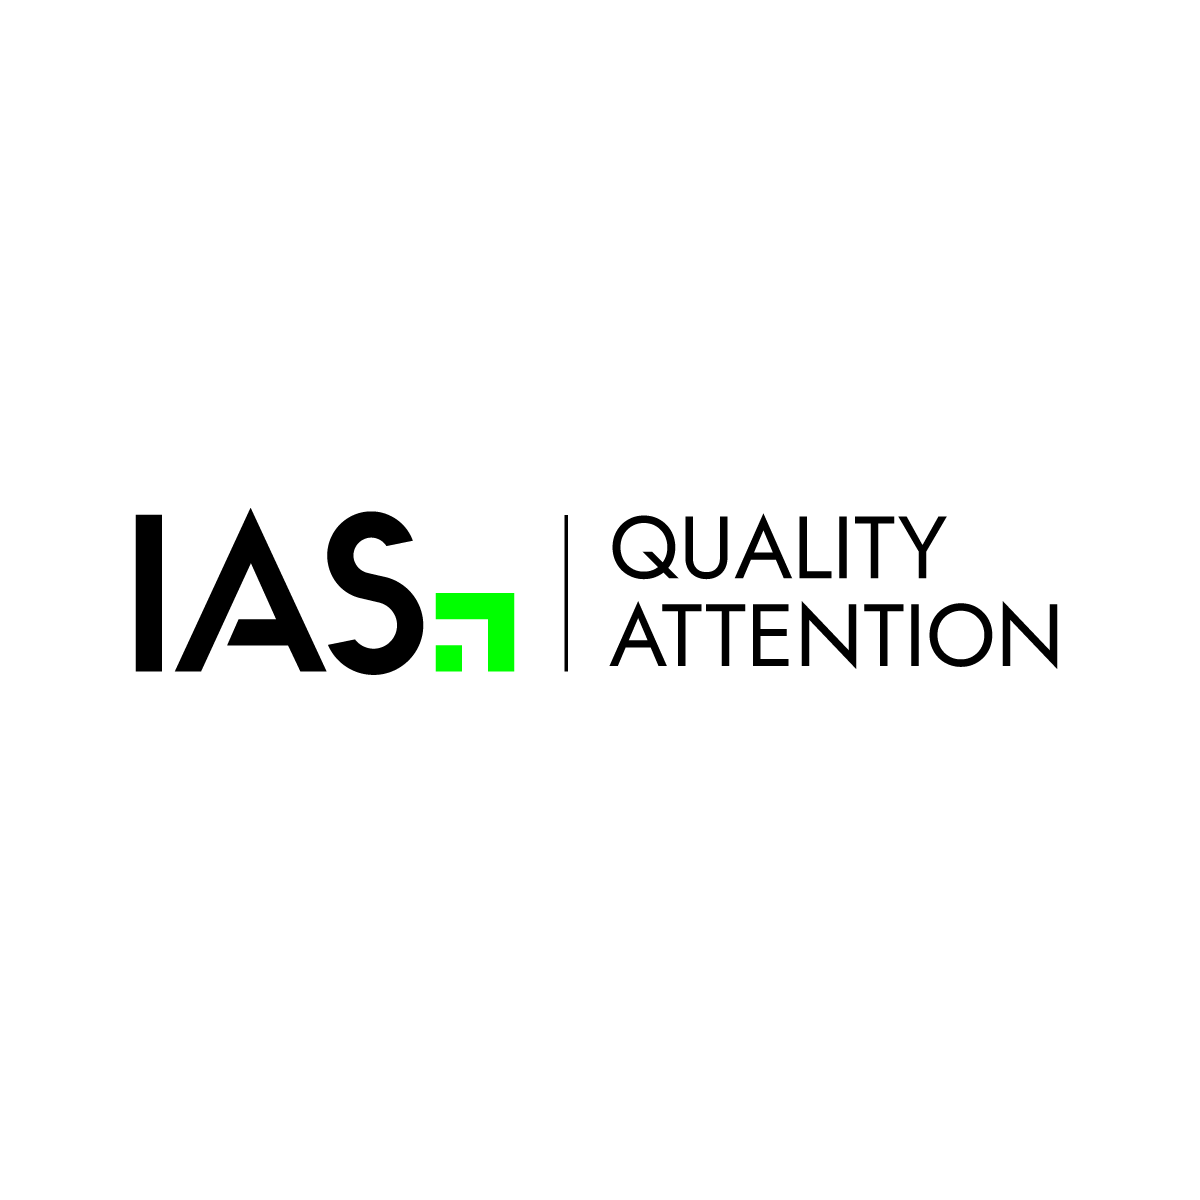 IAS Announces Quality Attention Measurement Product